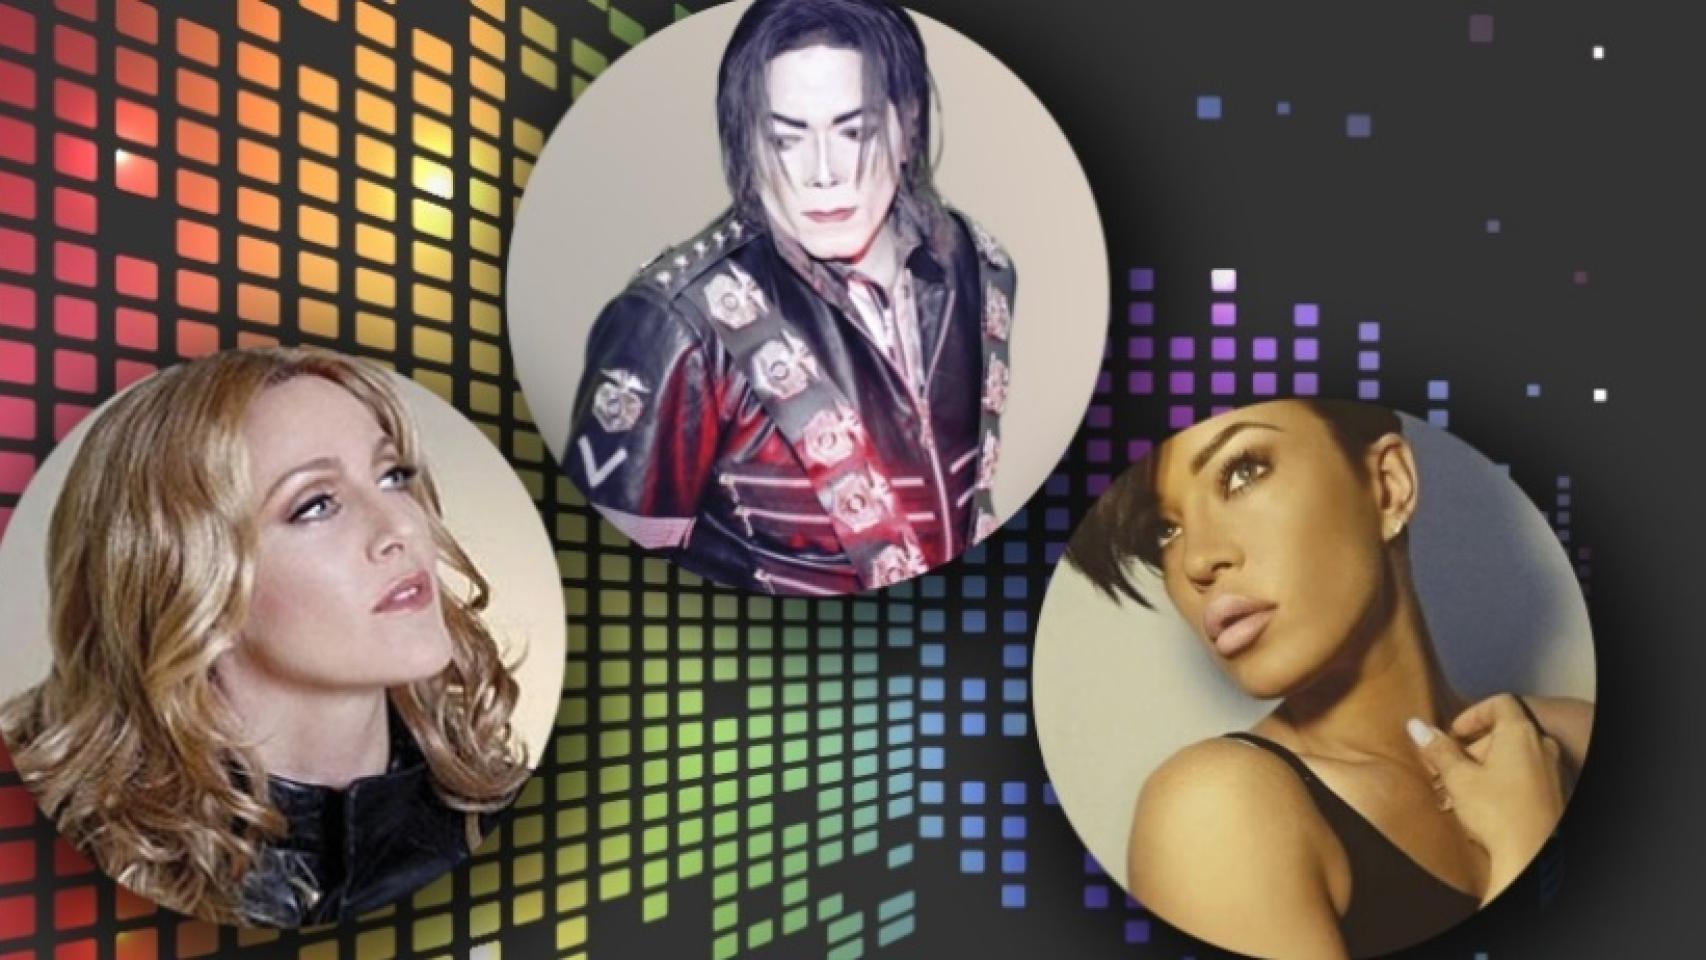 1706px x 960px - EngaÃ±o en CataluÃ±a: Madonna, Rihanna y Michael Jackson en concierto